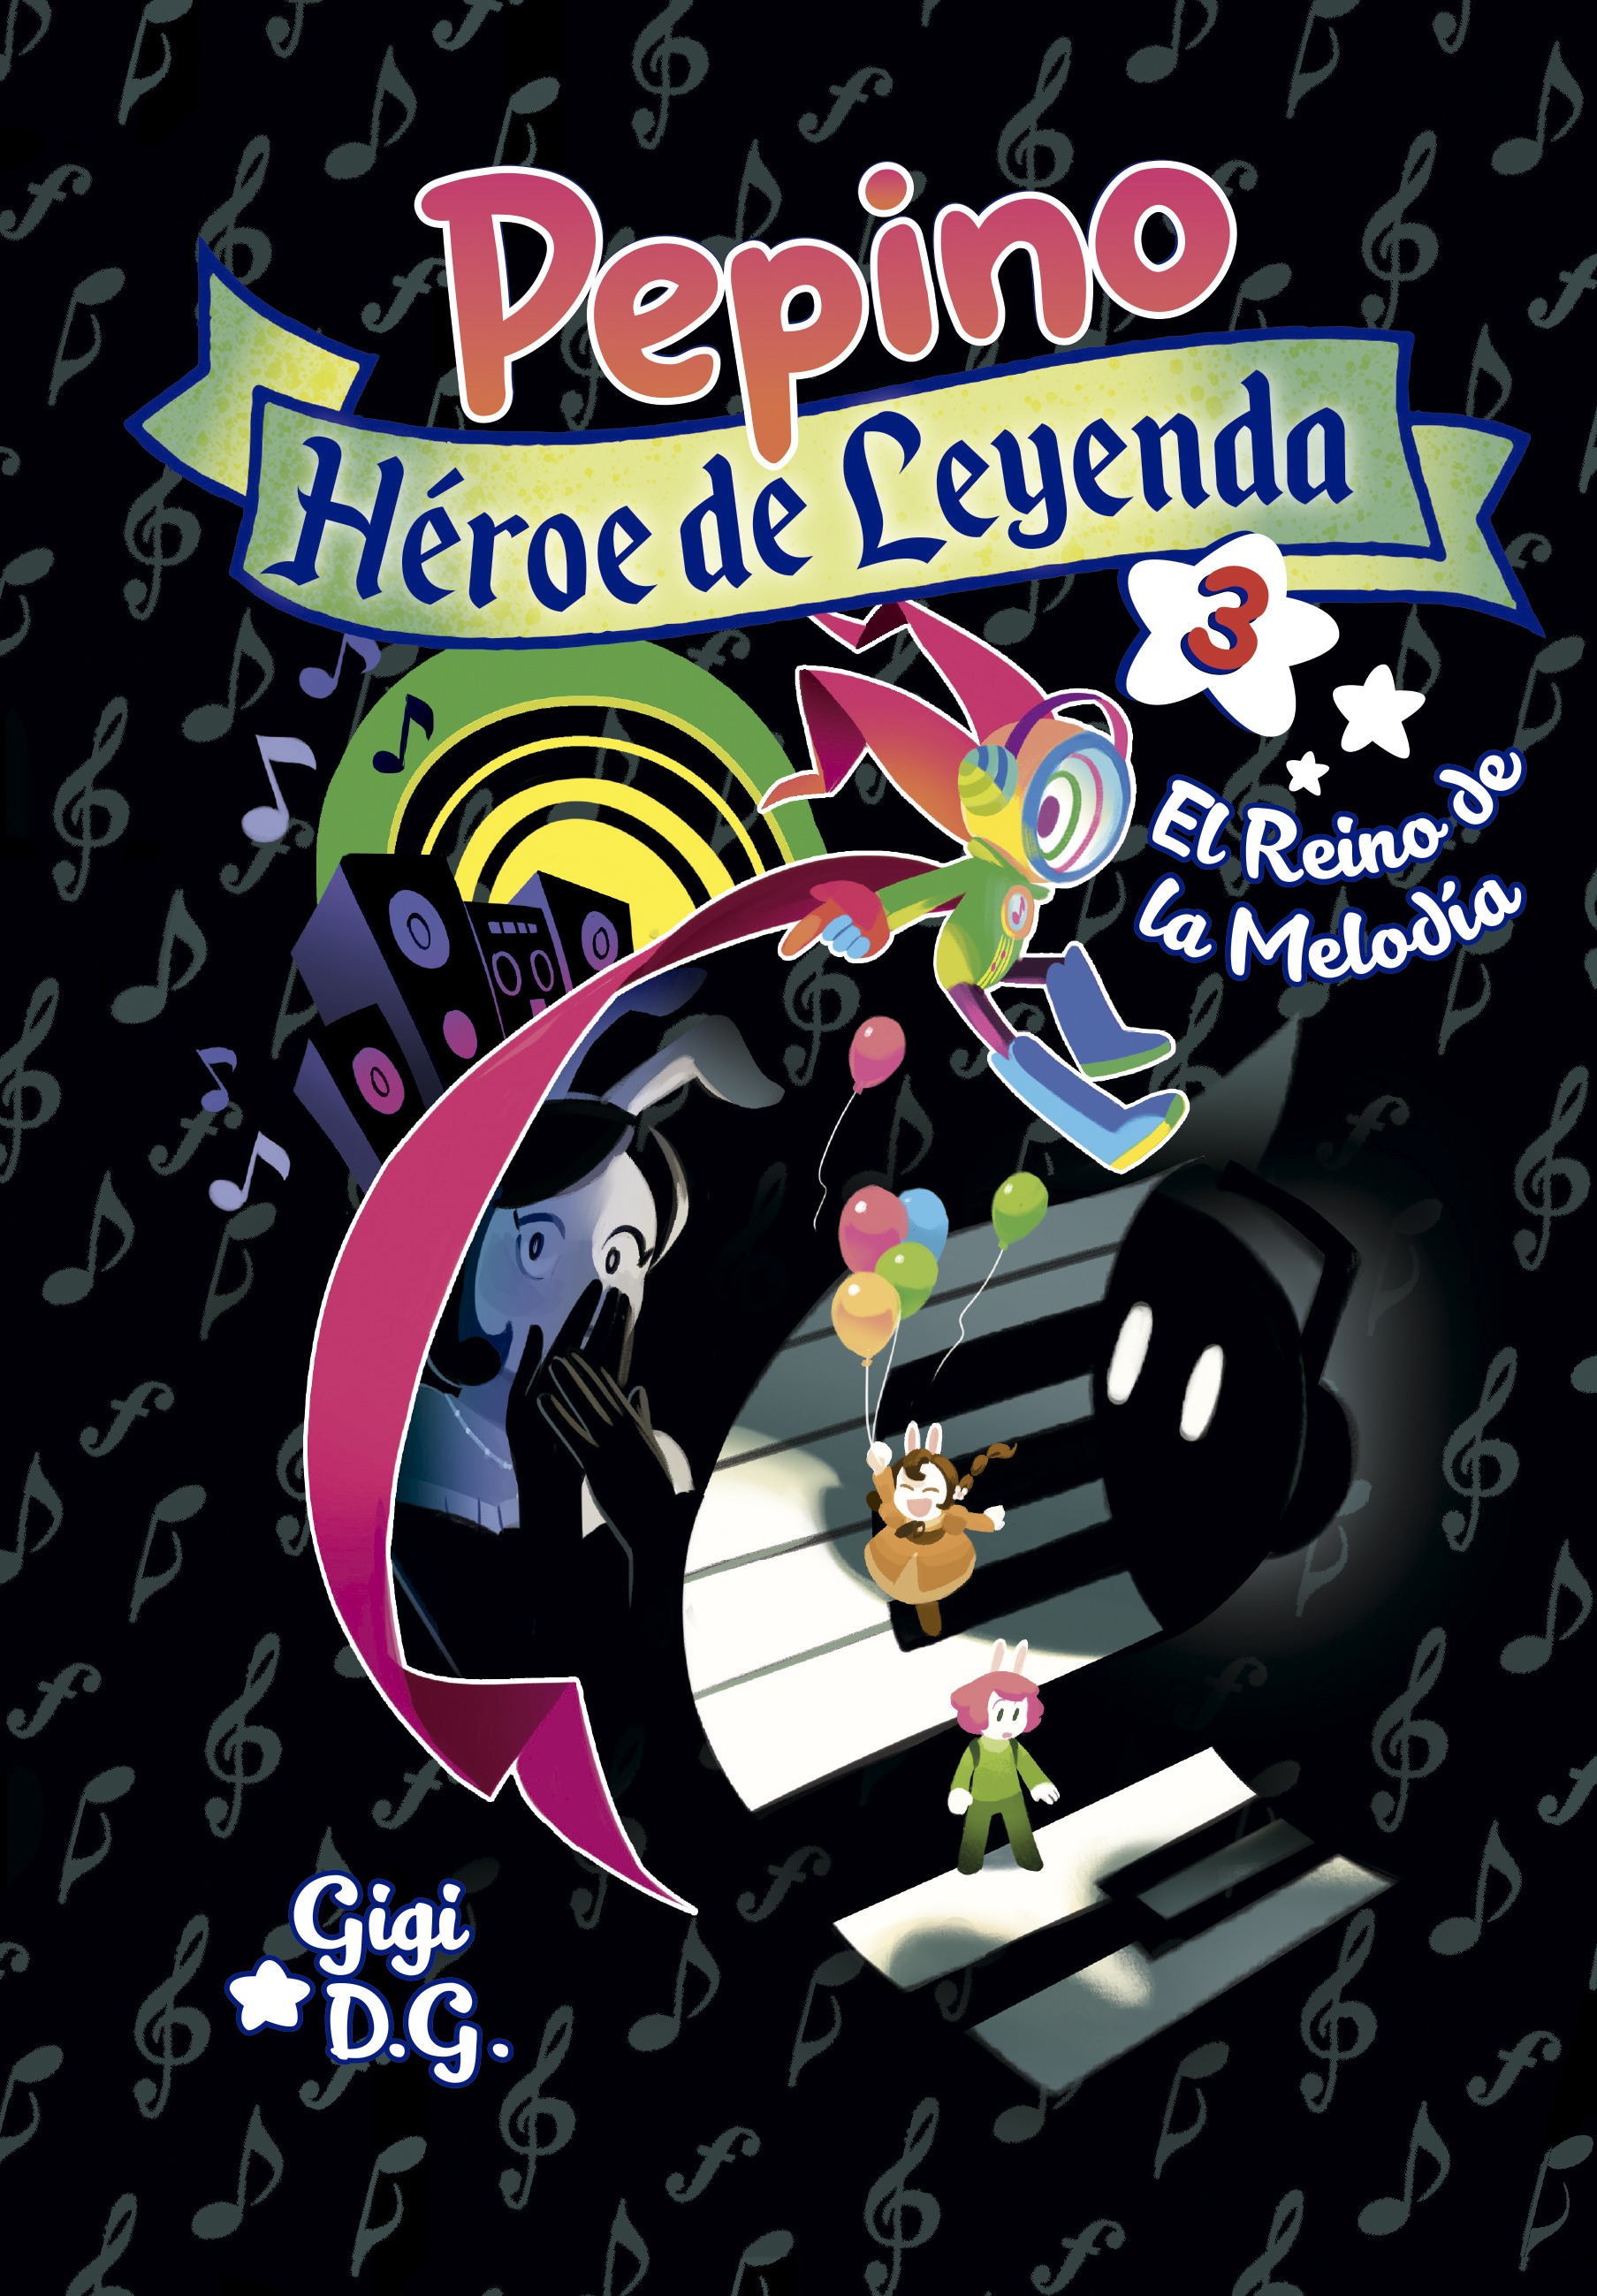 Cover from Pepino, Héroe de Leyenda 3. El reino de la melodía